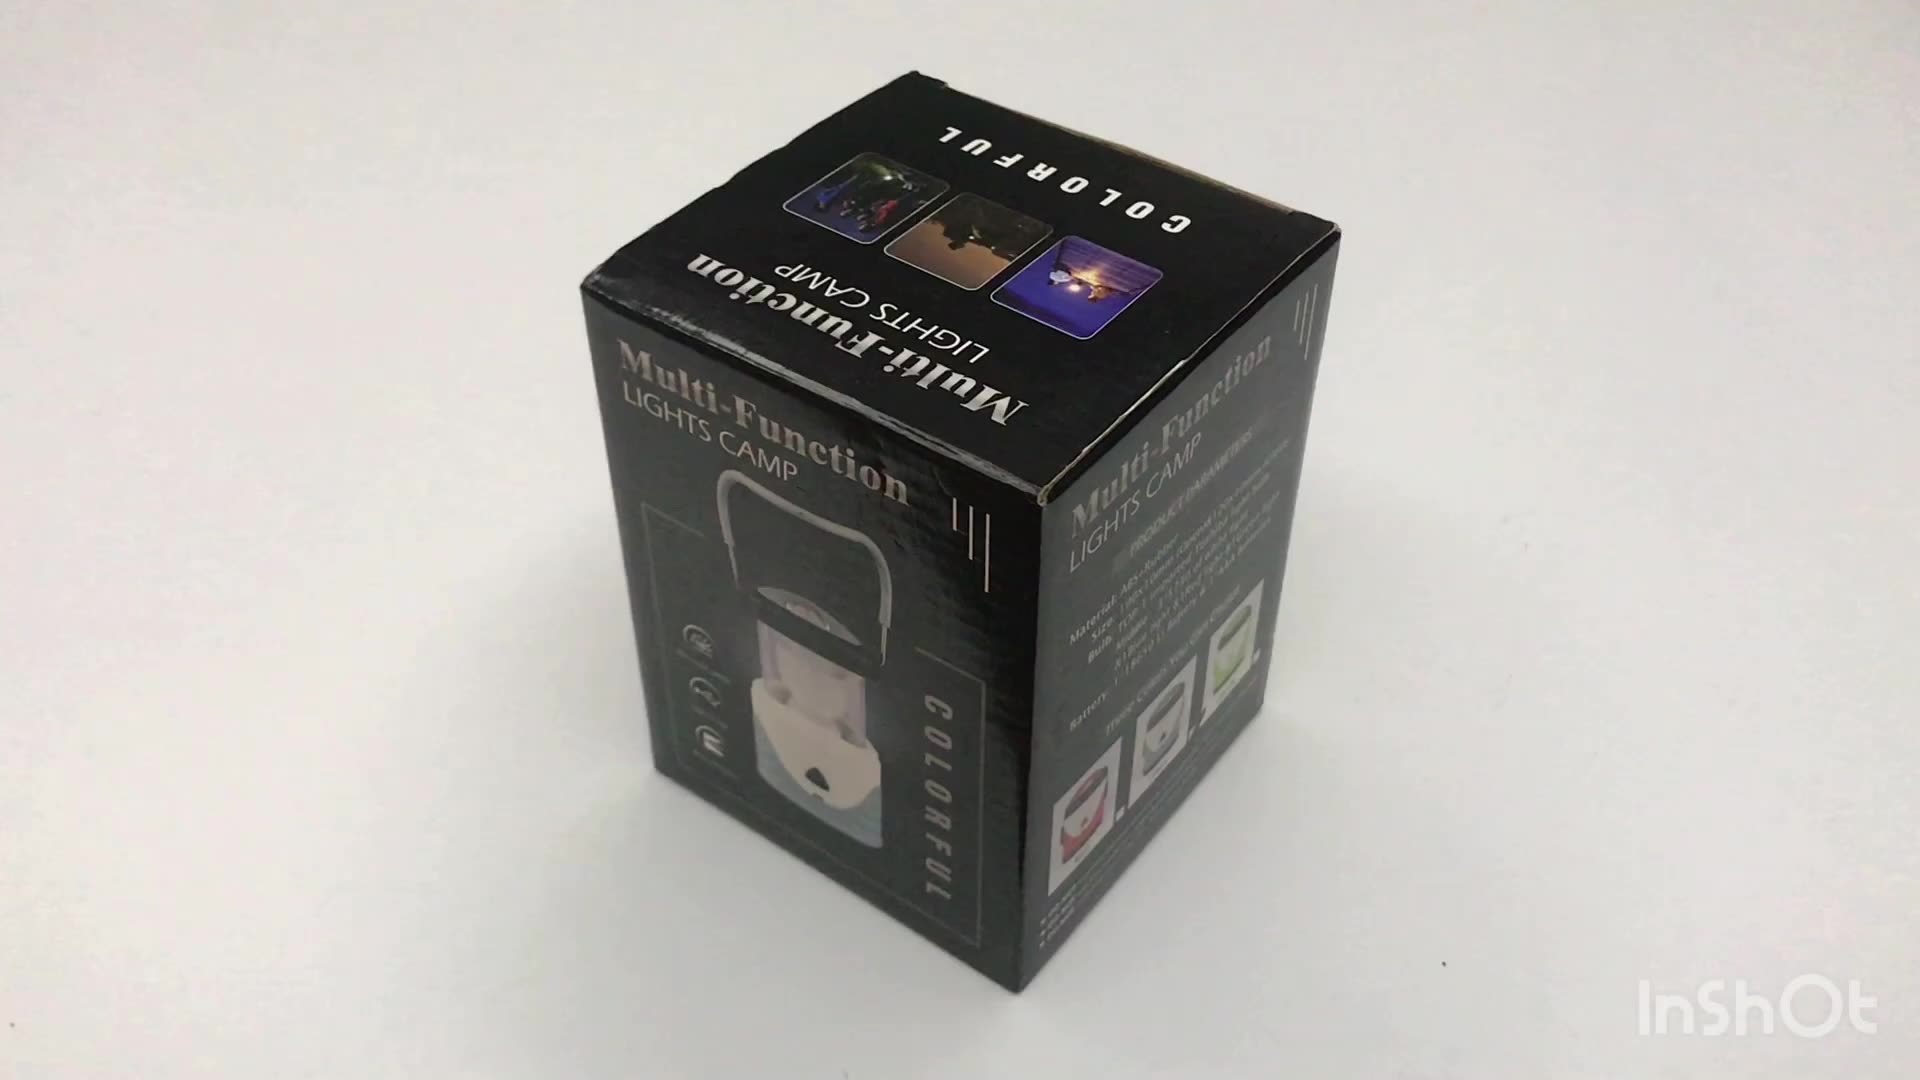 NUOVA MULTIFUNZIONE 2 IN 1 LADO PORTATICA LED RGB ricaricabile USB e Flasma luminosa portatile LED LUCILE LIGHTRO1